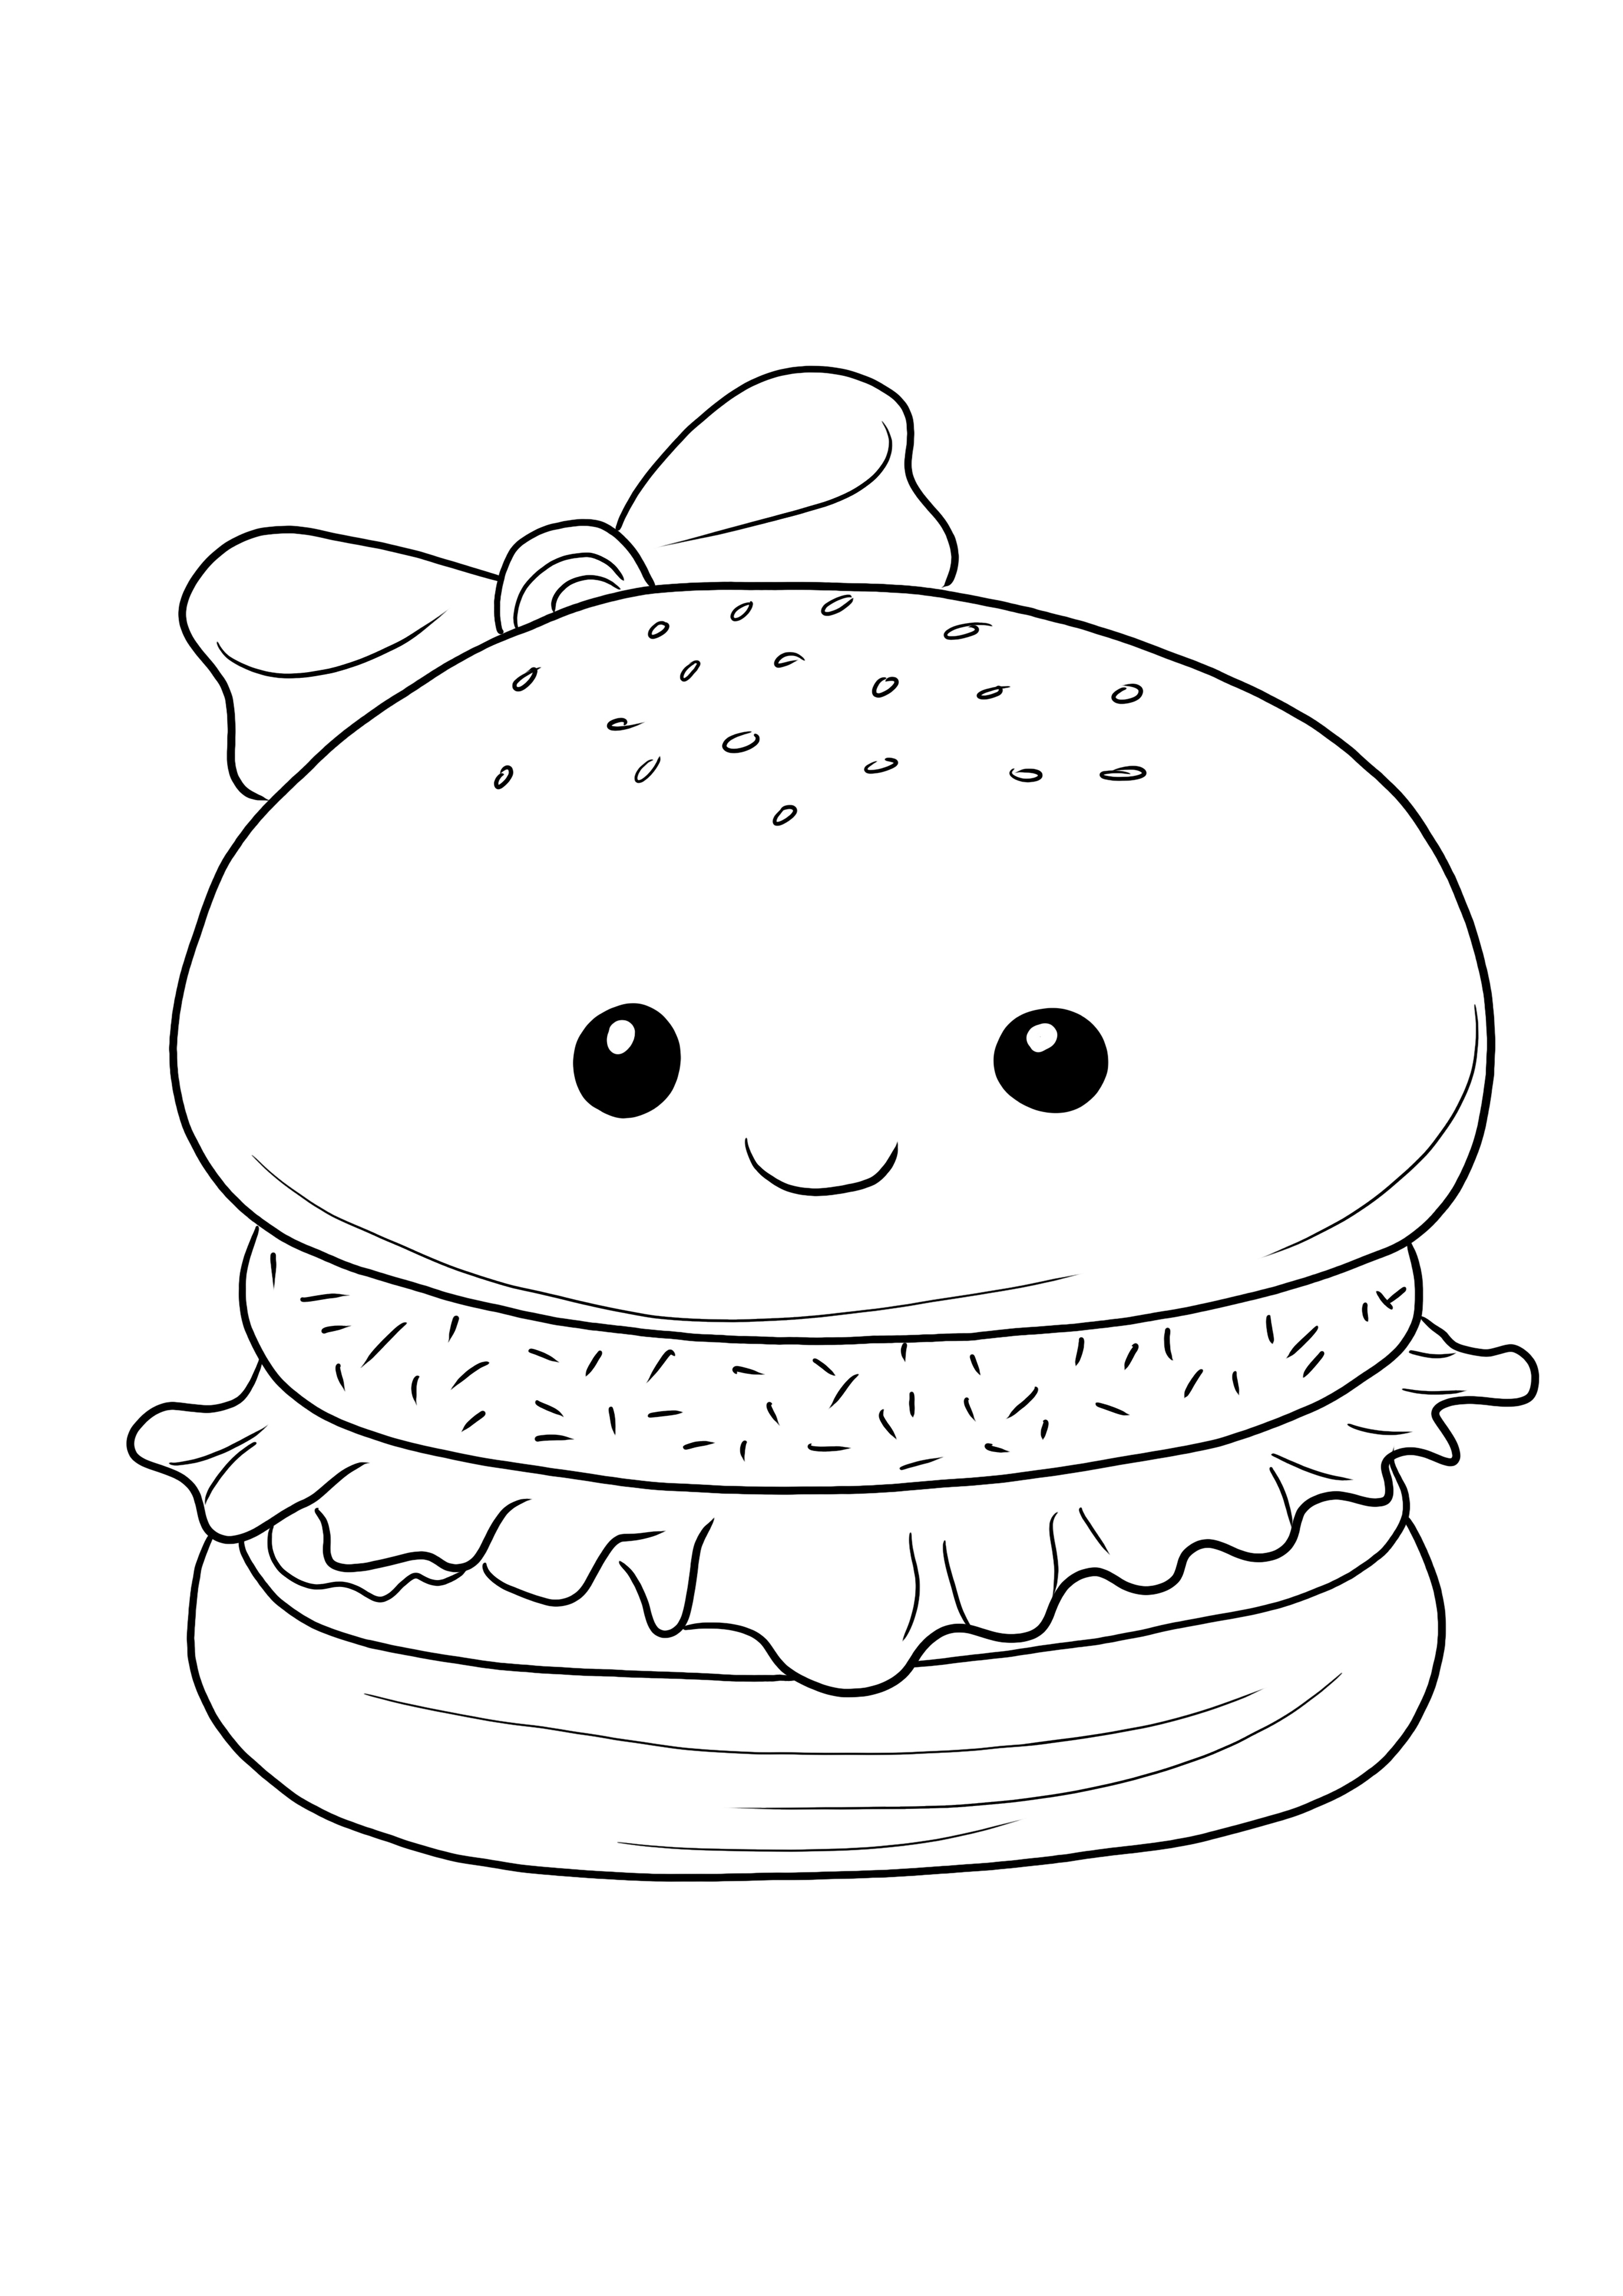 Imprimível grátis pronto para ser colorido de um hambúrguer para as crianças aprenderem se divertindo